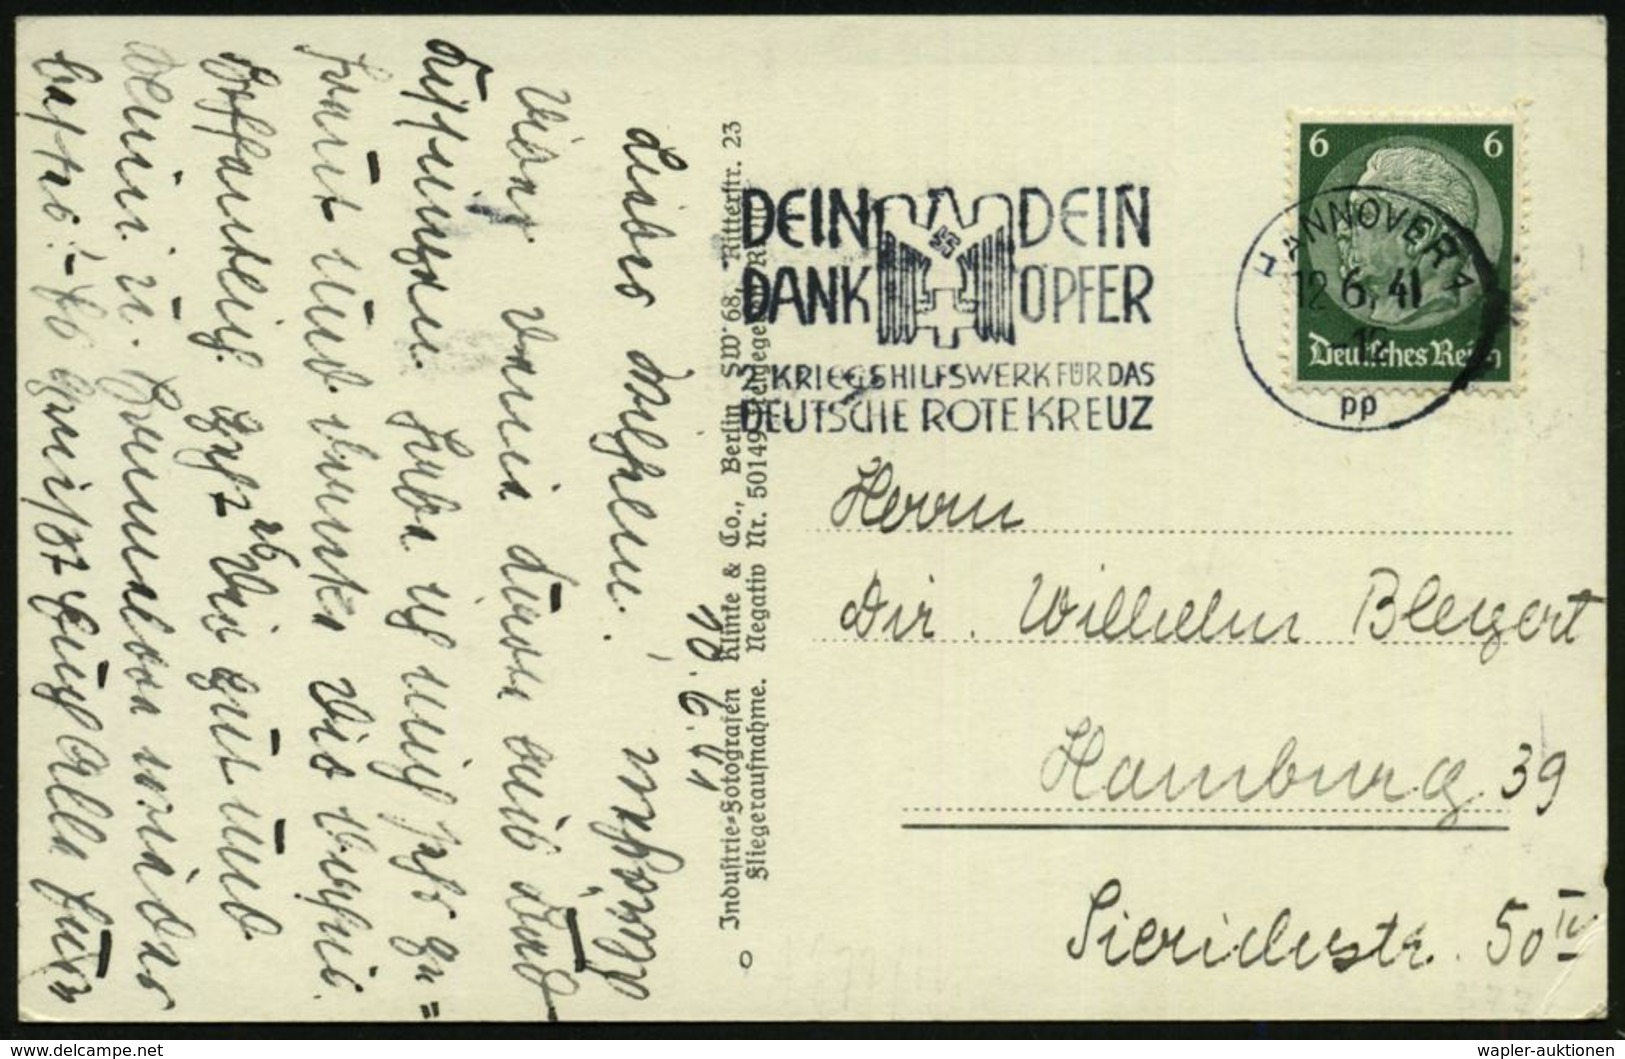 HANNOVER 1/ Pp/ DEIN/ DANK/ DEIN/ OPFER/ 2.KRIEGSHILFSWERK FÜR DAS/ DRK 1941 (12.6.) MWSt (NS-DRK-Logo) Klar Gest. S/w.- - Croix-Rouge